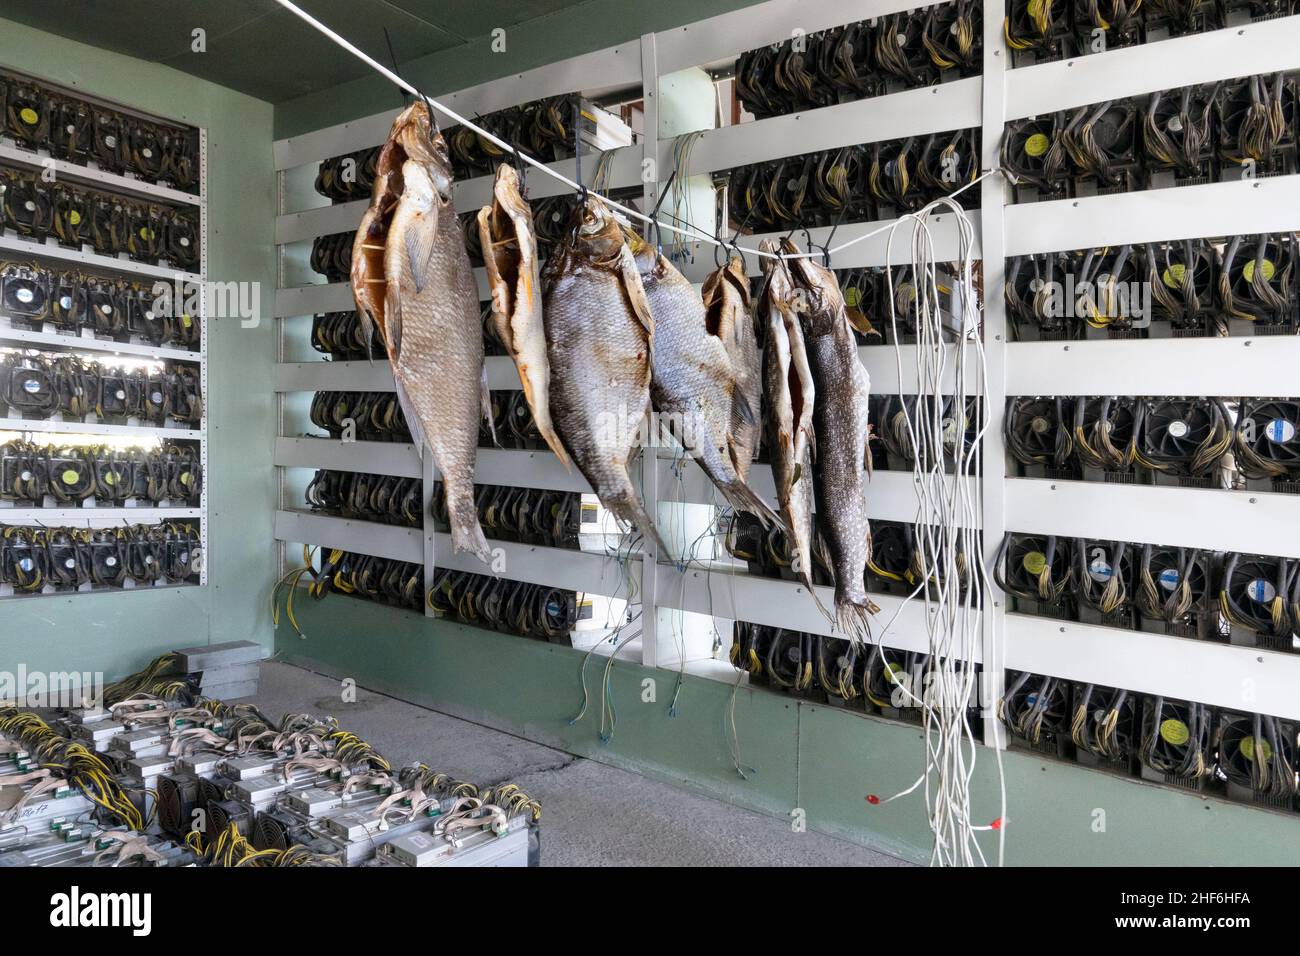 Russia, Siberia, Usolje-Sibirskoje, azienda mineraria Siberia, pesci secchi su una linea di cavi di rete in aria calda di scarico Foto Stock